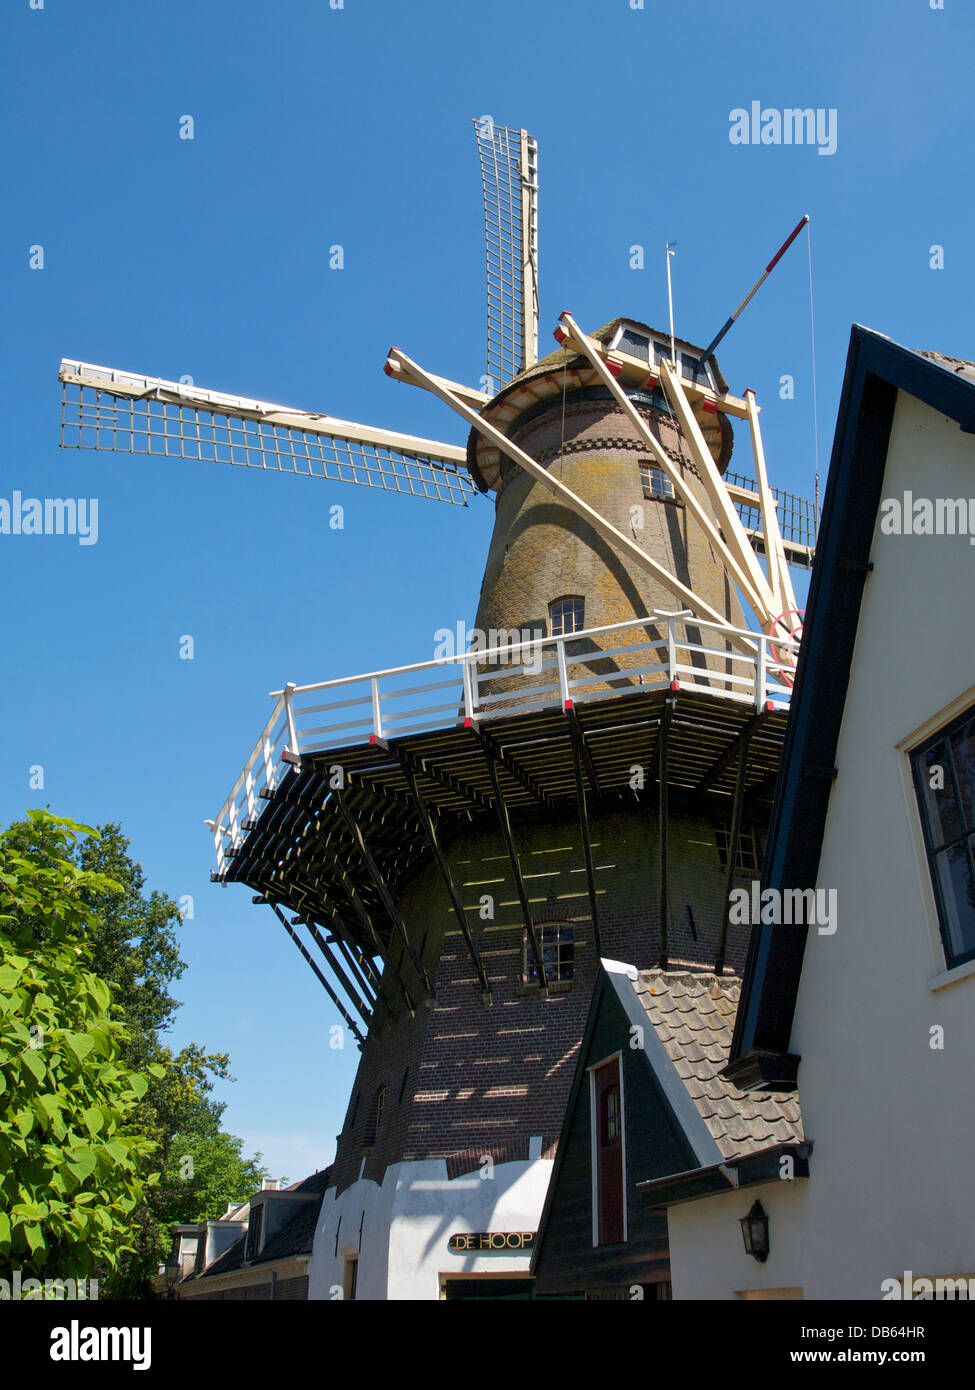 El molino de viento de Hoop en Loenen aan de Vecht, Utrecht, Países Bajos. Construido en 1903, después de que su predecesor fue destruido por un incendio. Foto de stock